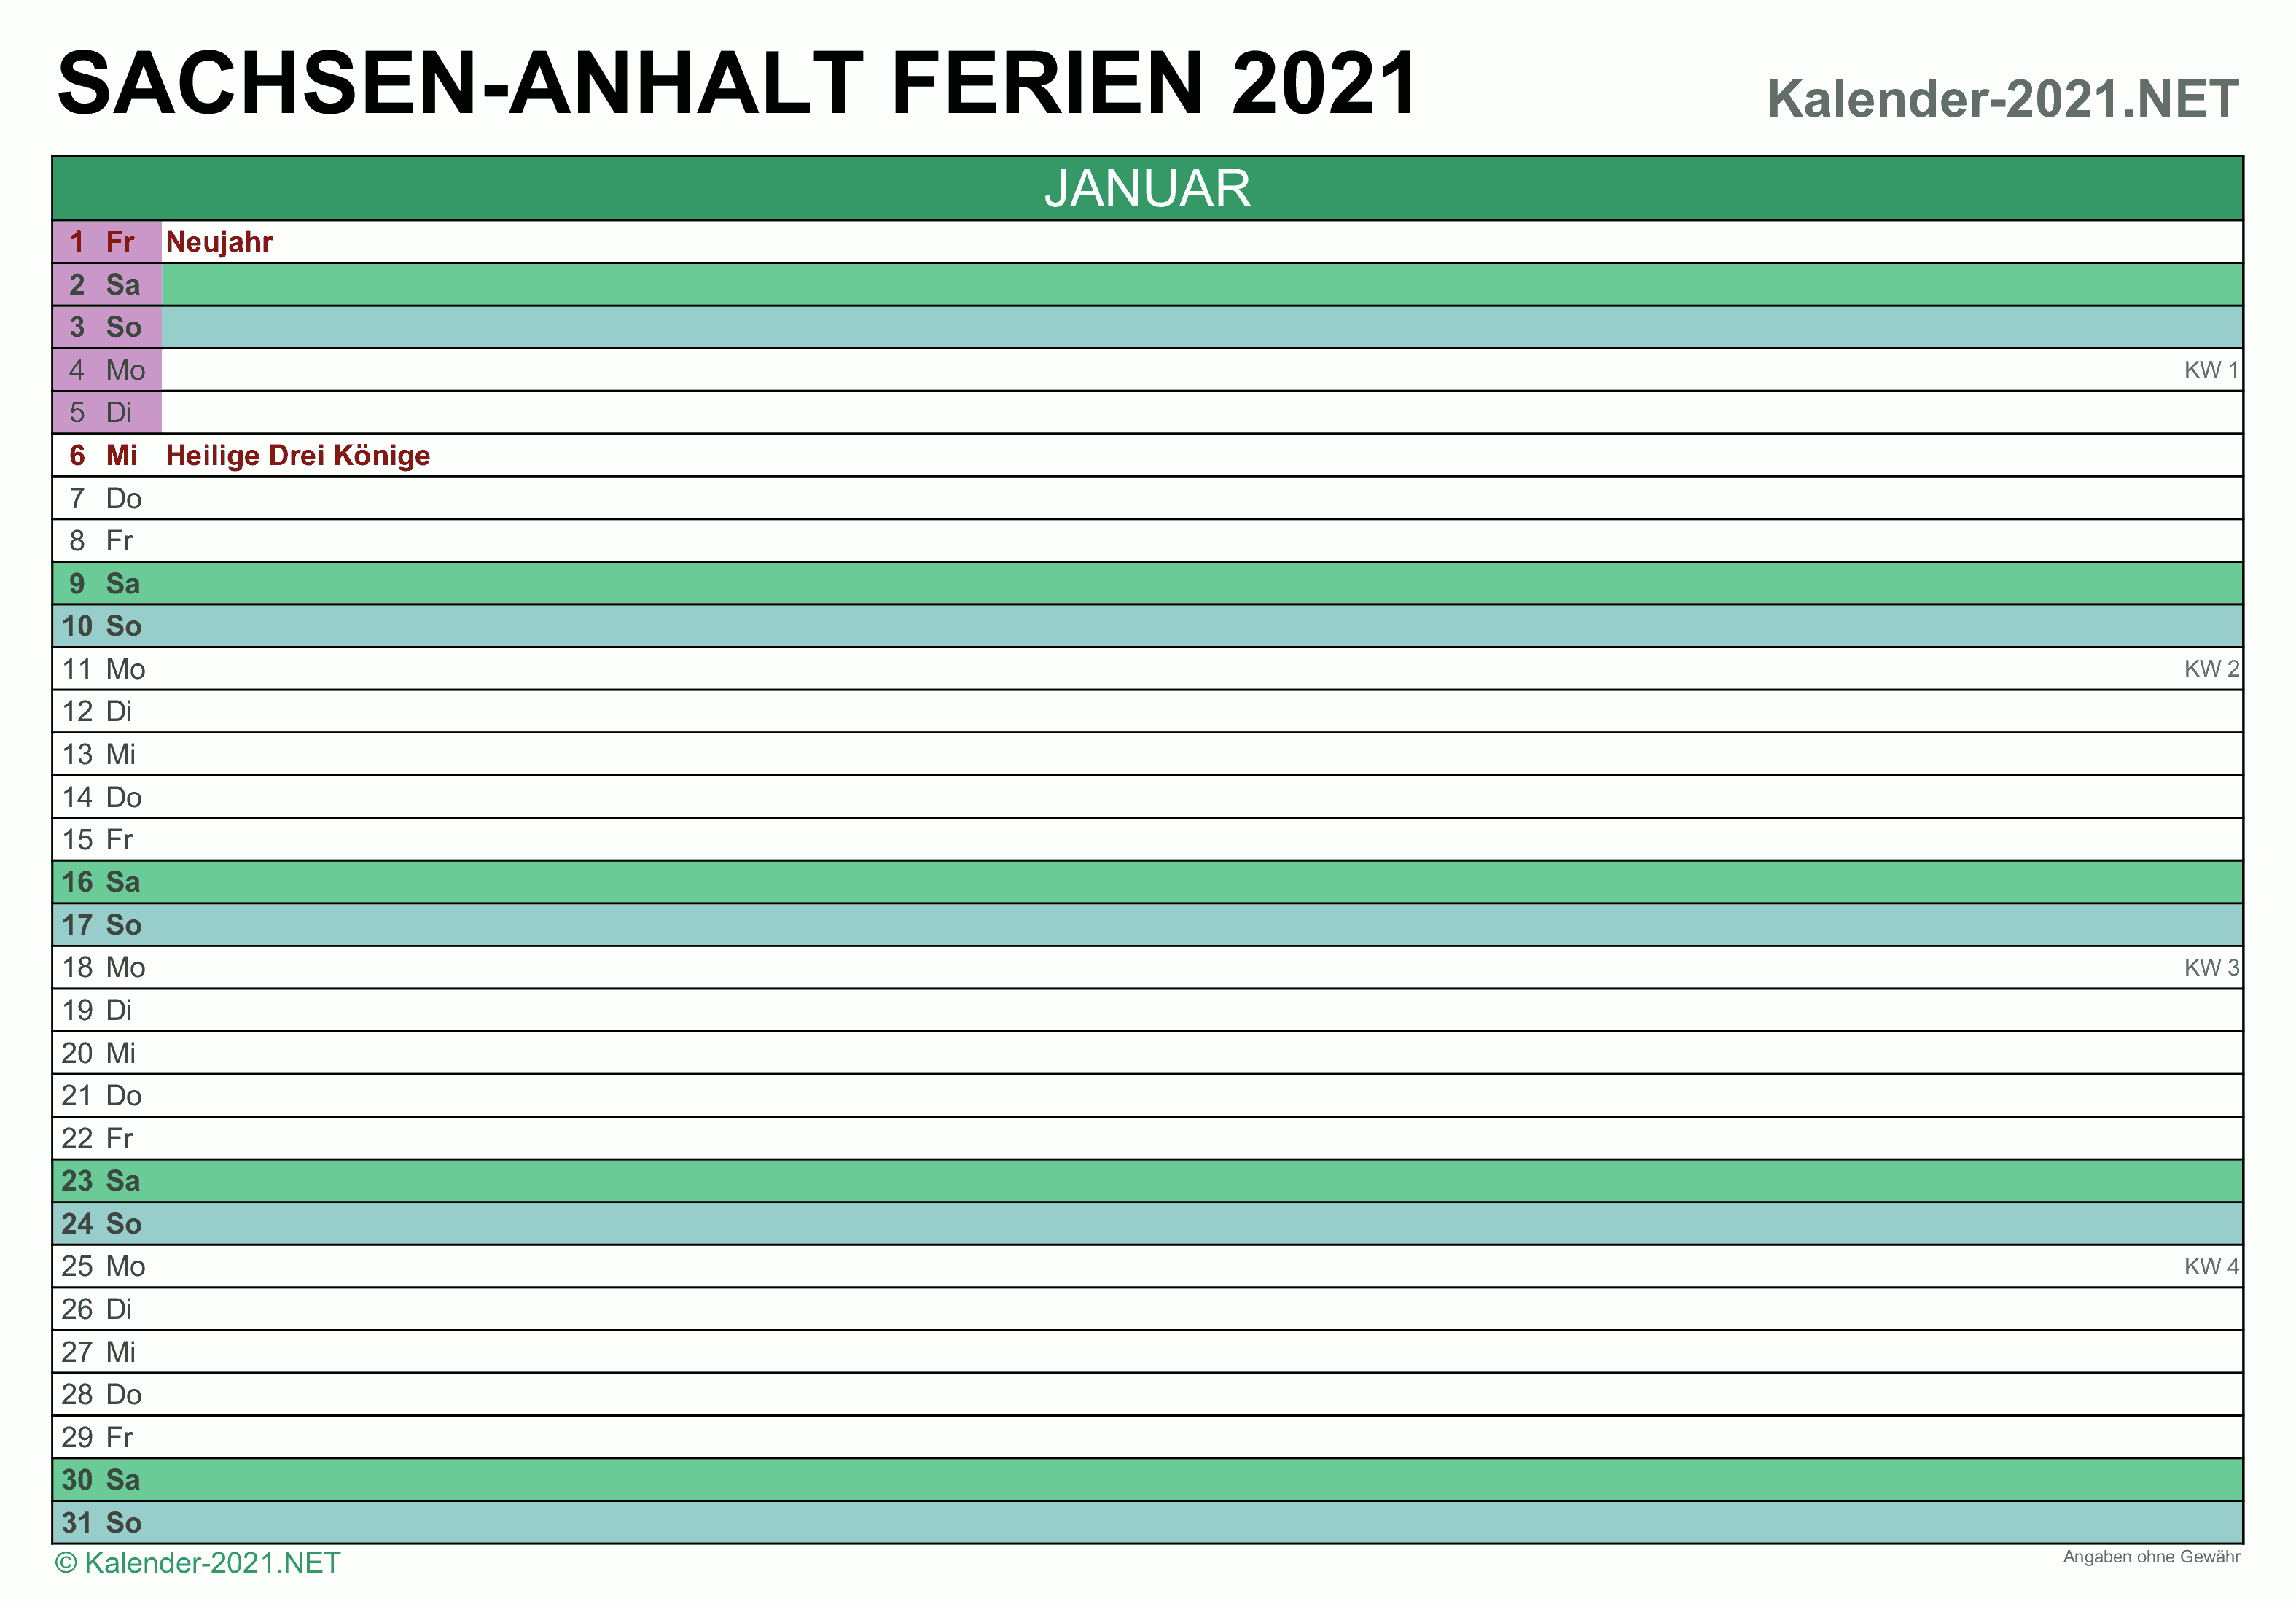 FERIEN Sachsen-Anhalt 2021 - Ferienkalender & Übersicht